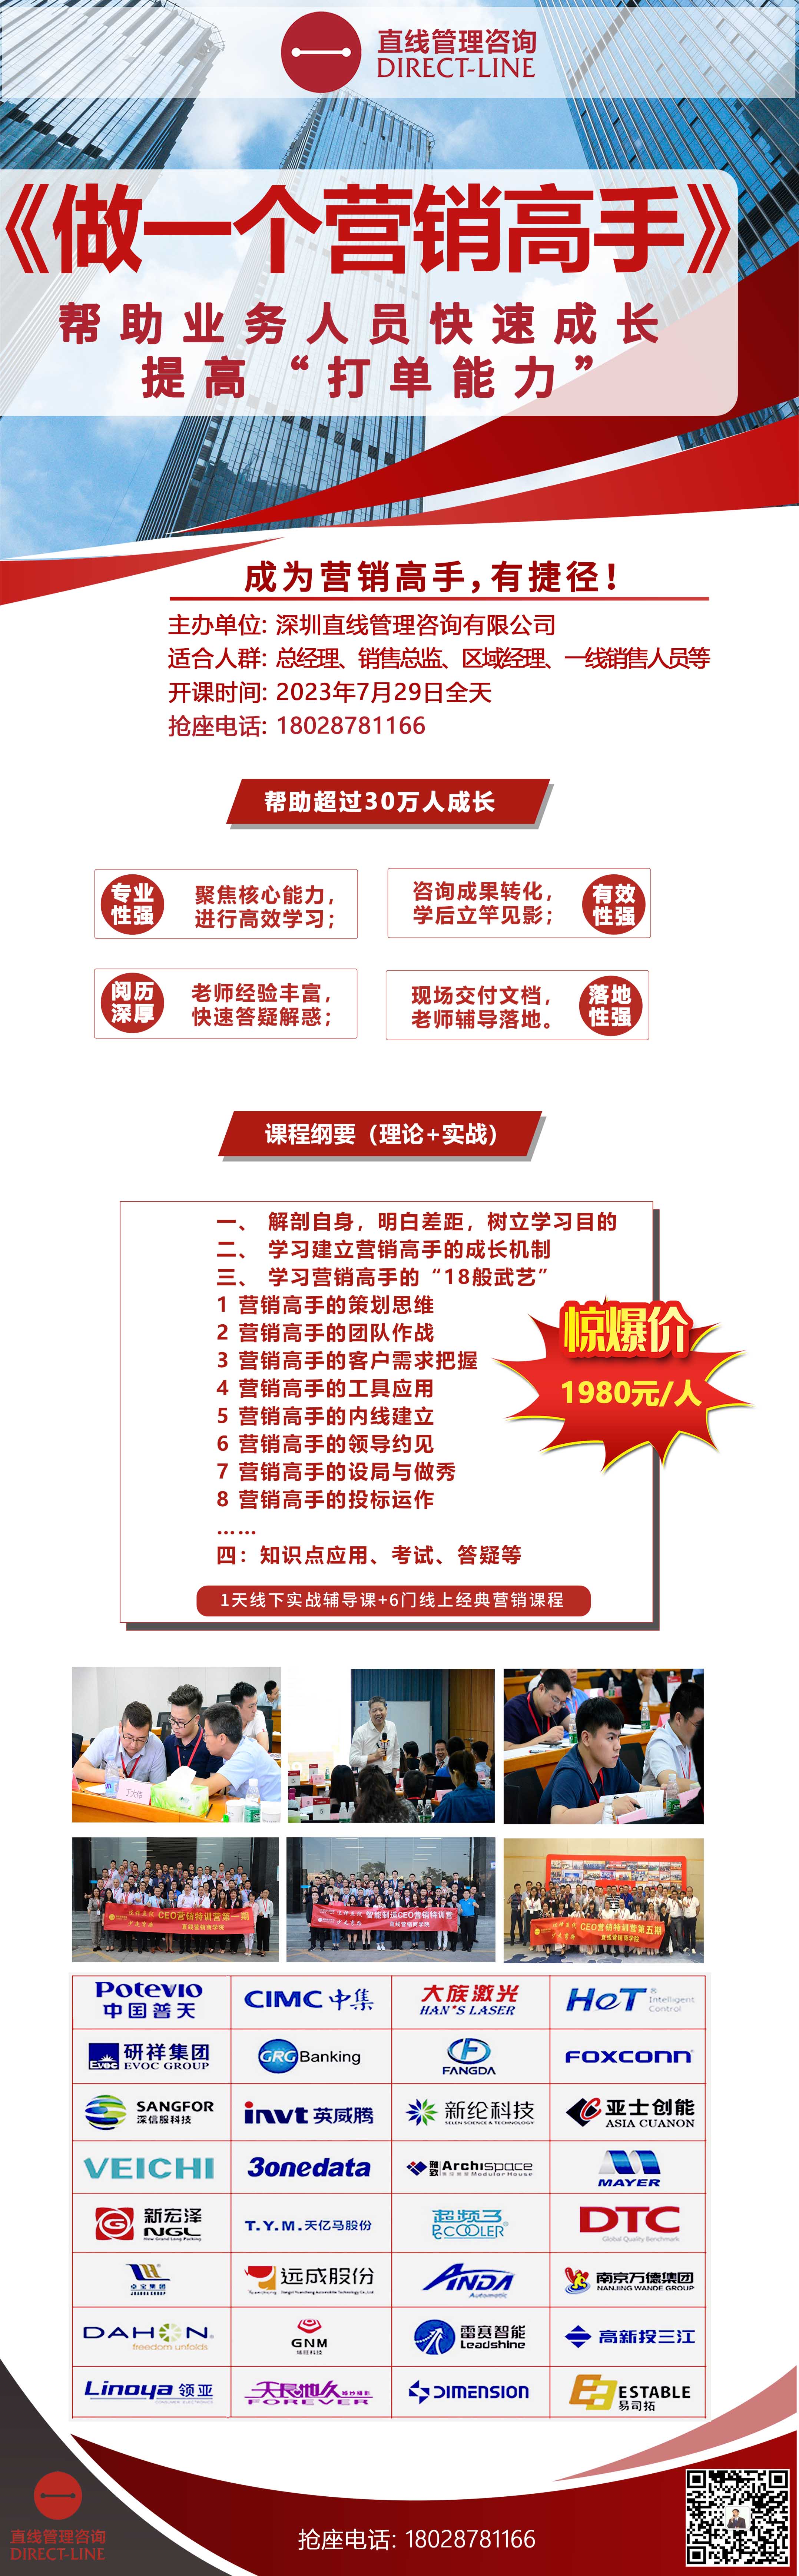 7月29日樊小宁《做一个营销高手》-深圳直线管理咨询